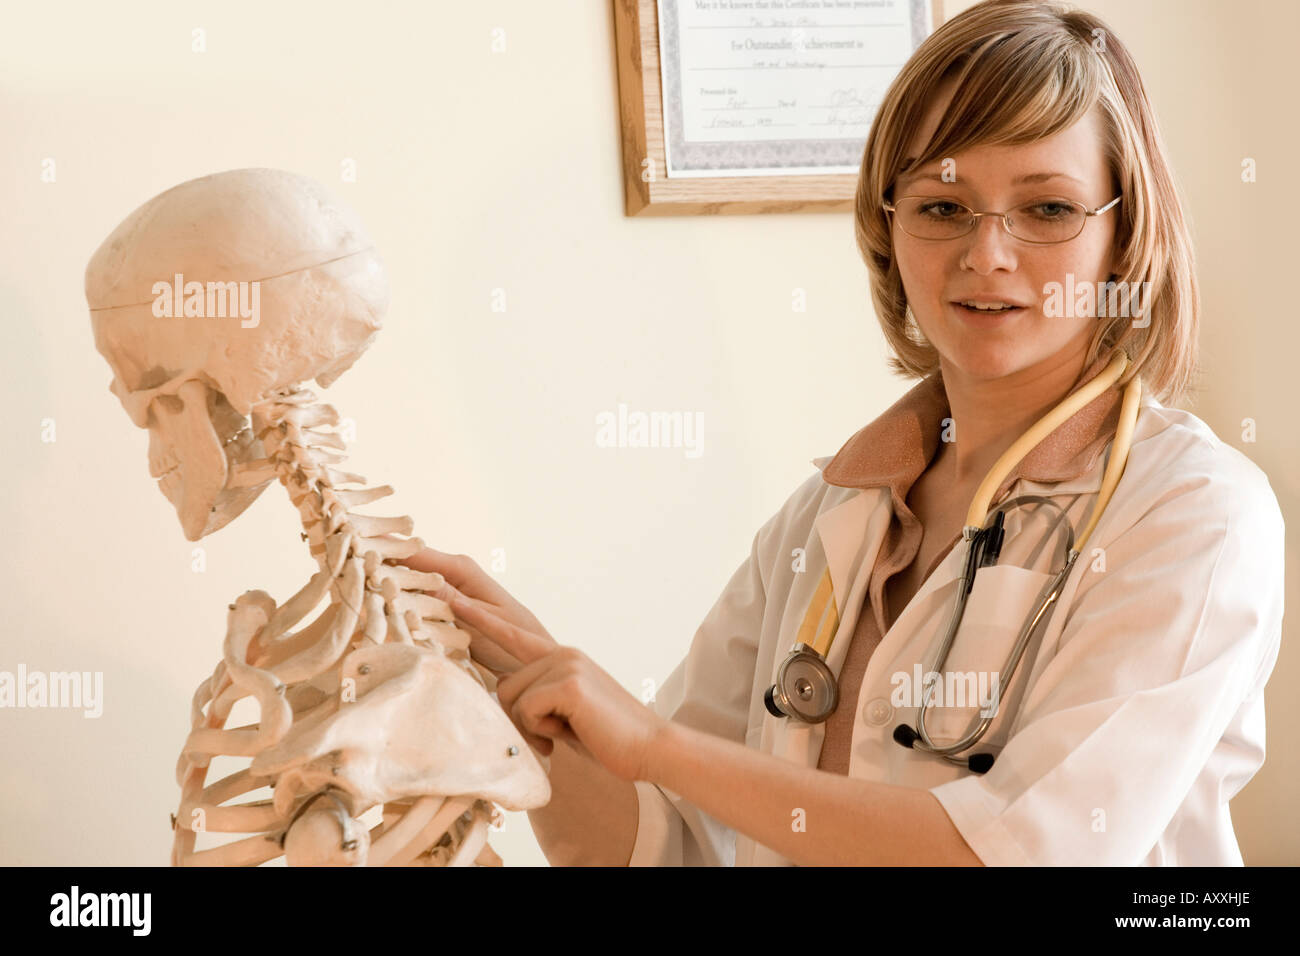 Les chiropraticien utilise un squelette d'enseigner un patient au sujet de la colonne vertébrale et la structure osseuse. Banque D'Images